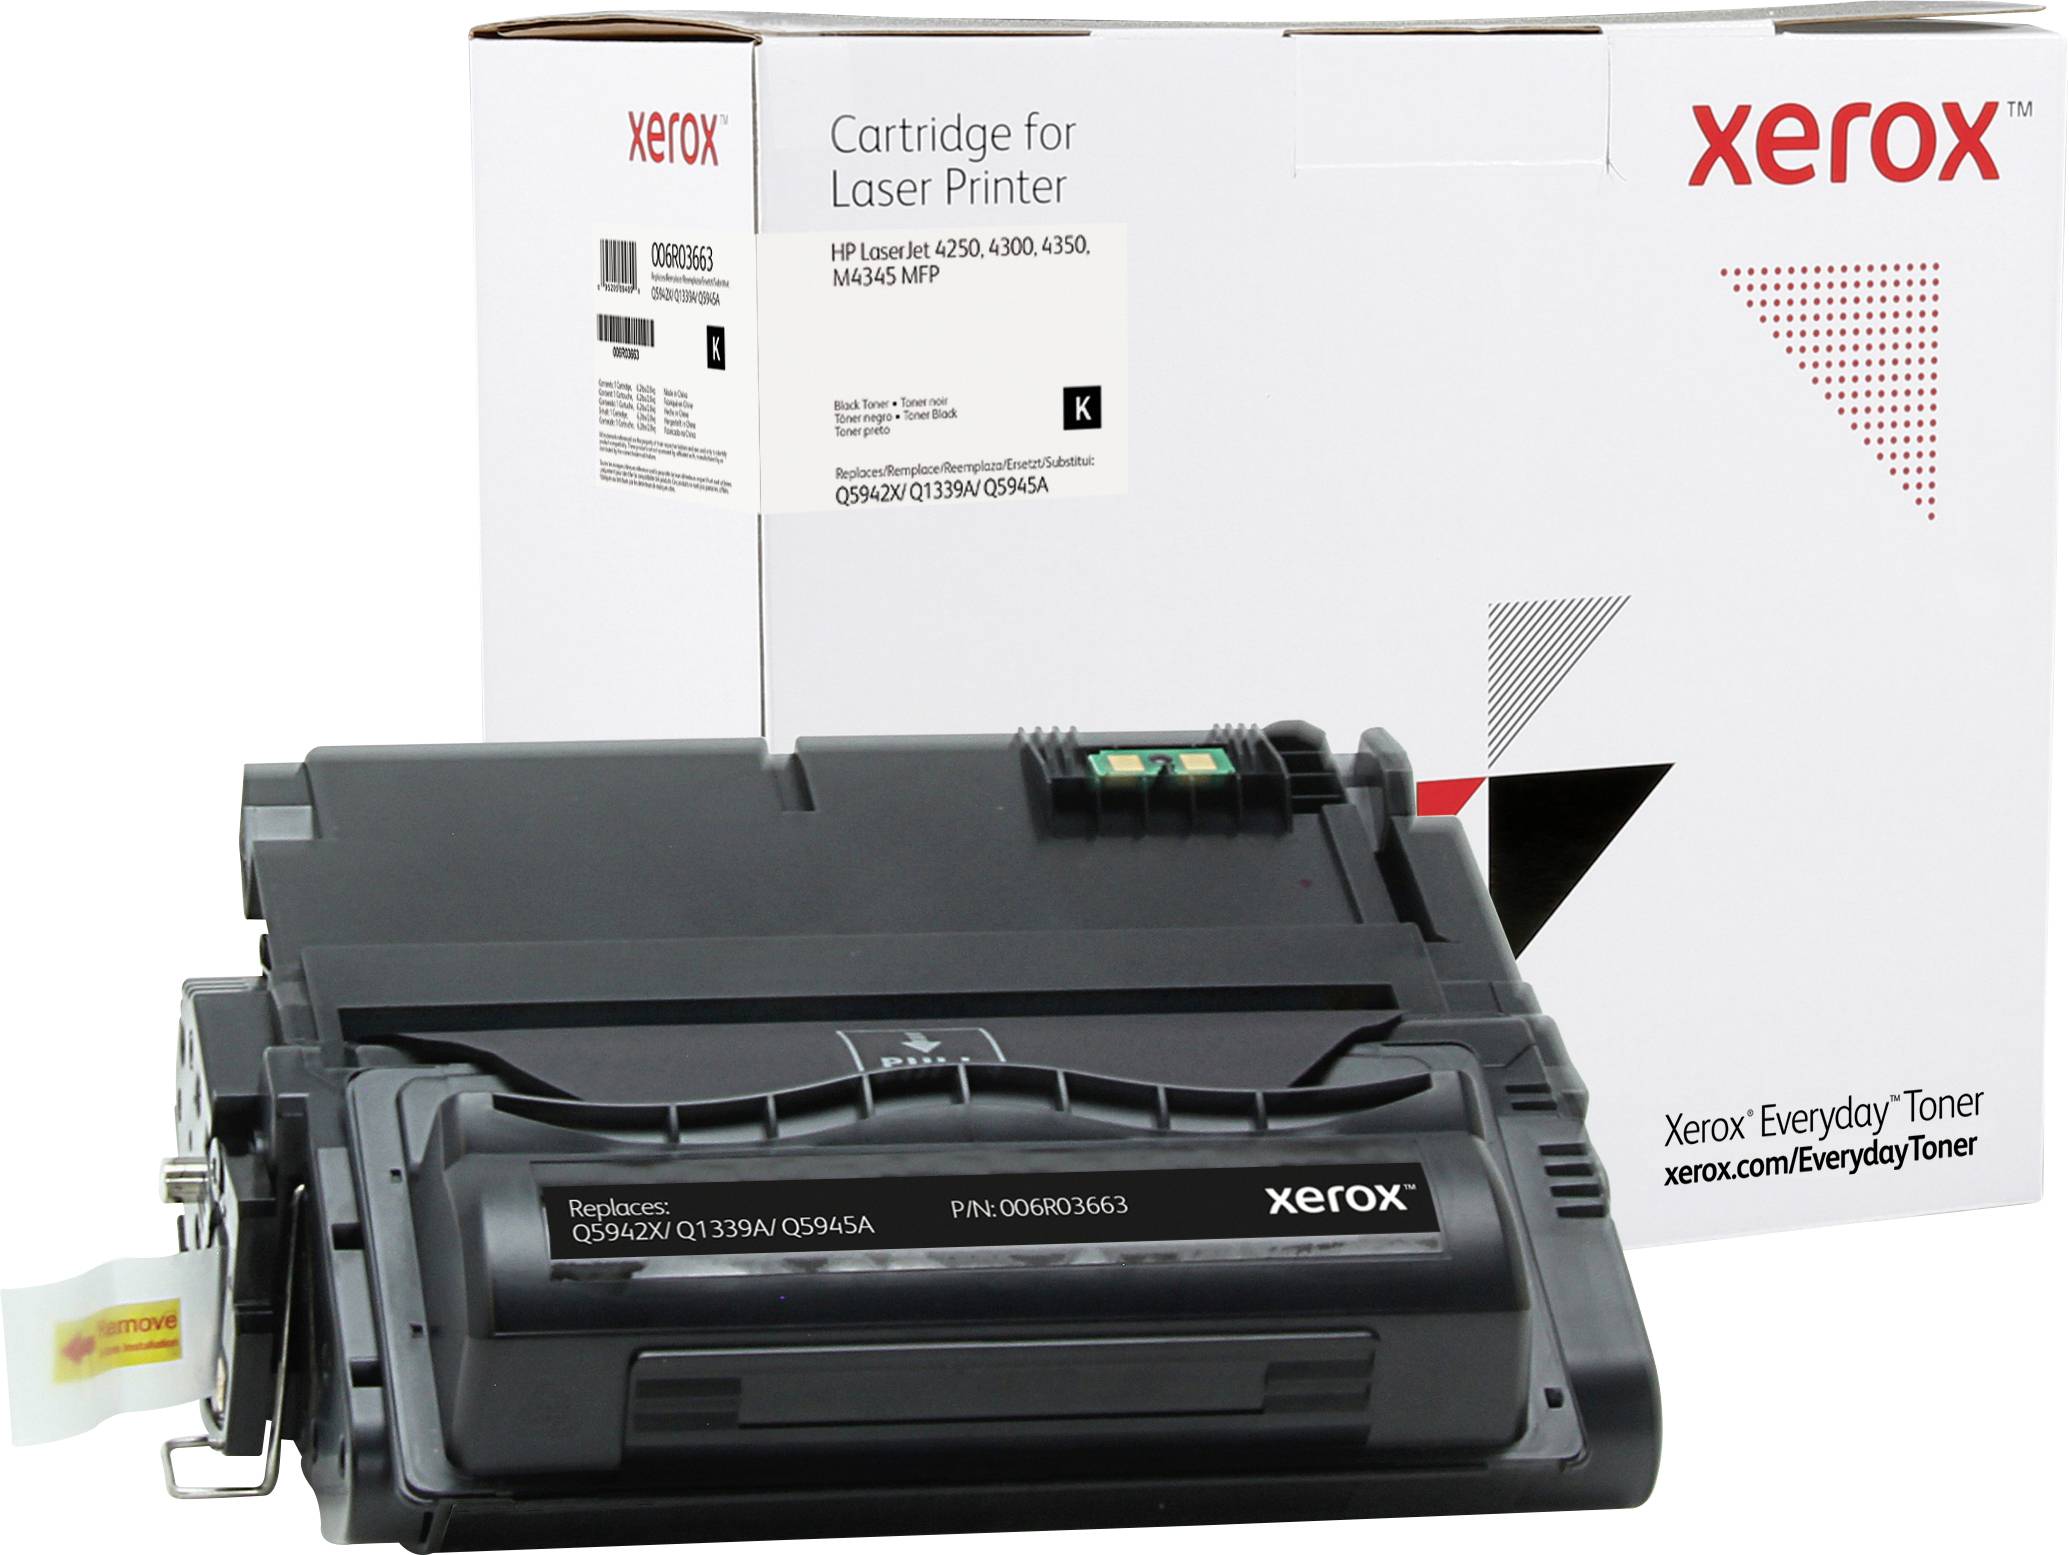 XEROX Everyday - Toner Schwarz - ersetzt HP 42X / 39A / 45A für HP LaserJet 4250, 4300, 4350, M4345